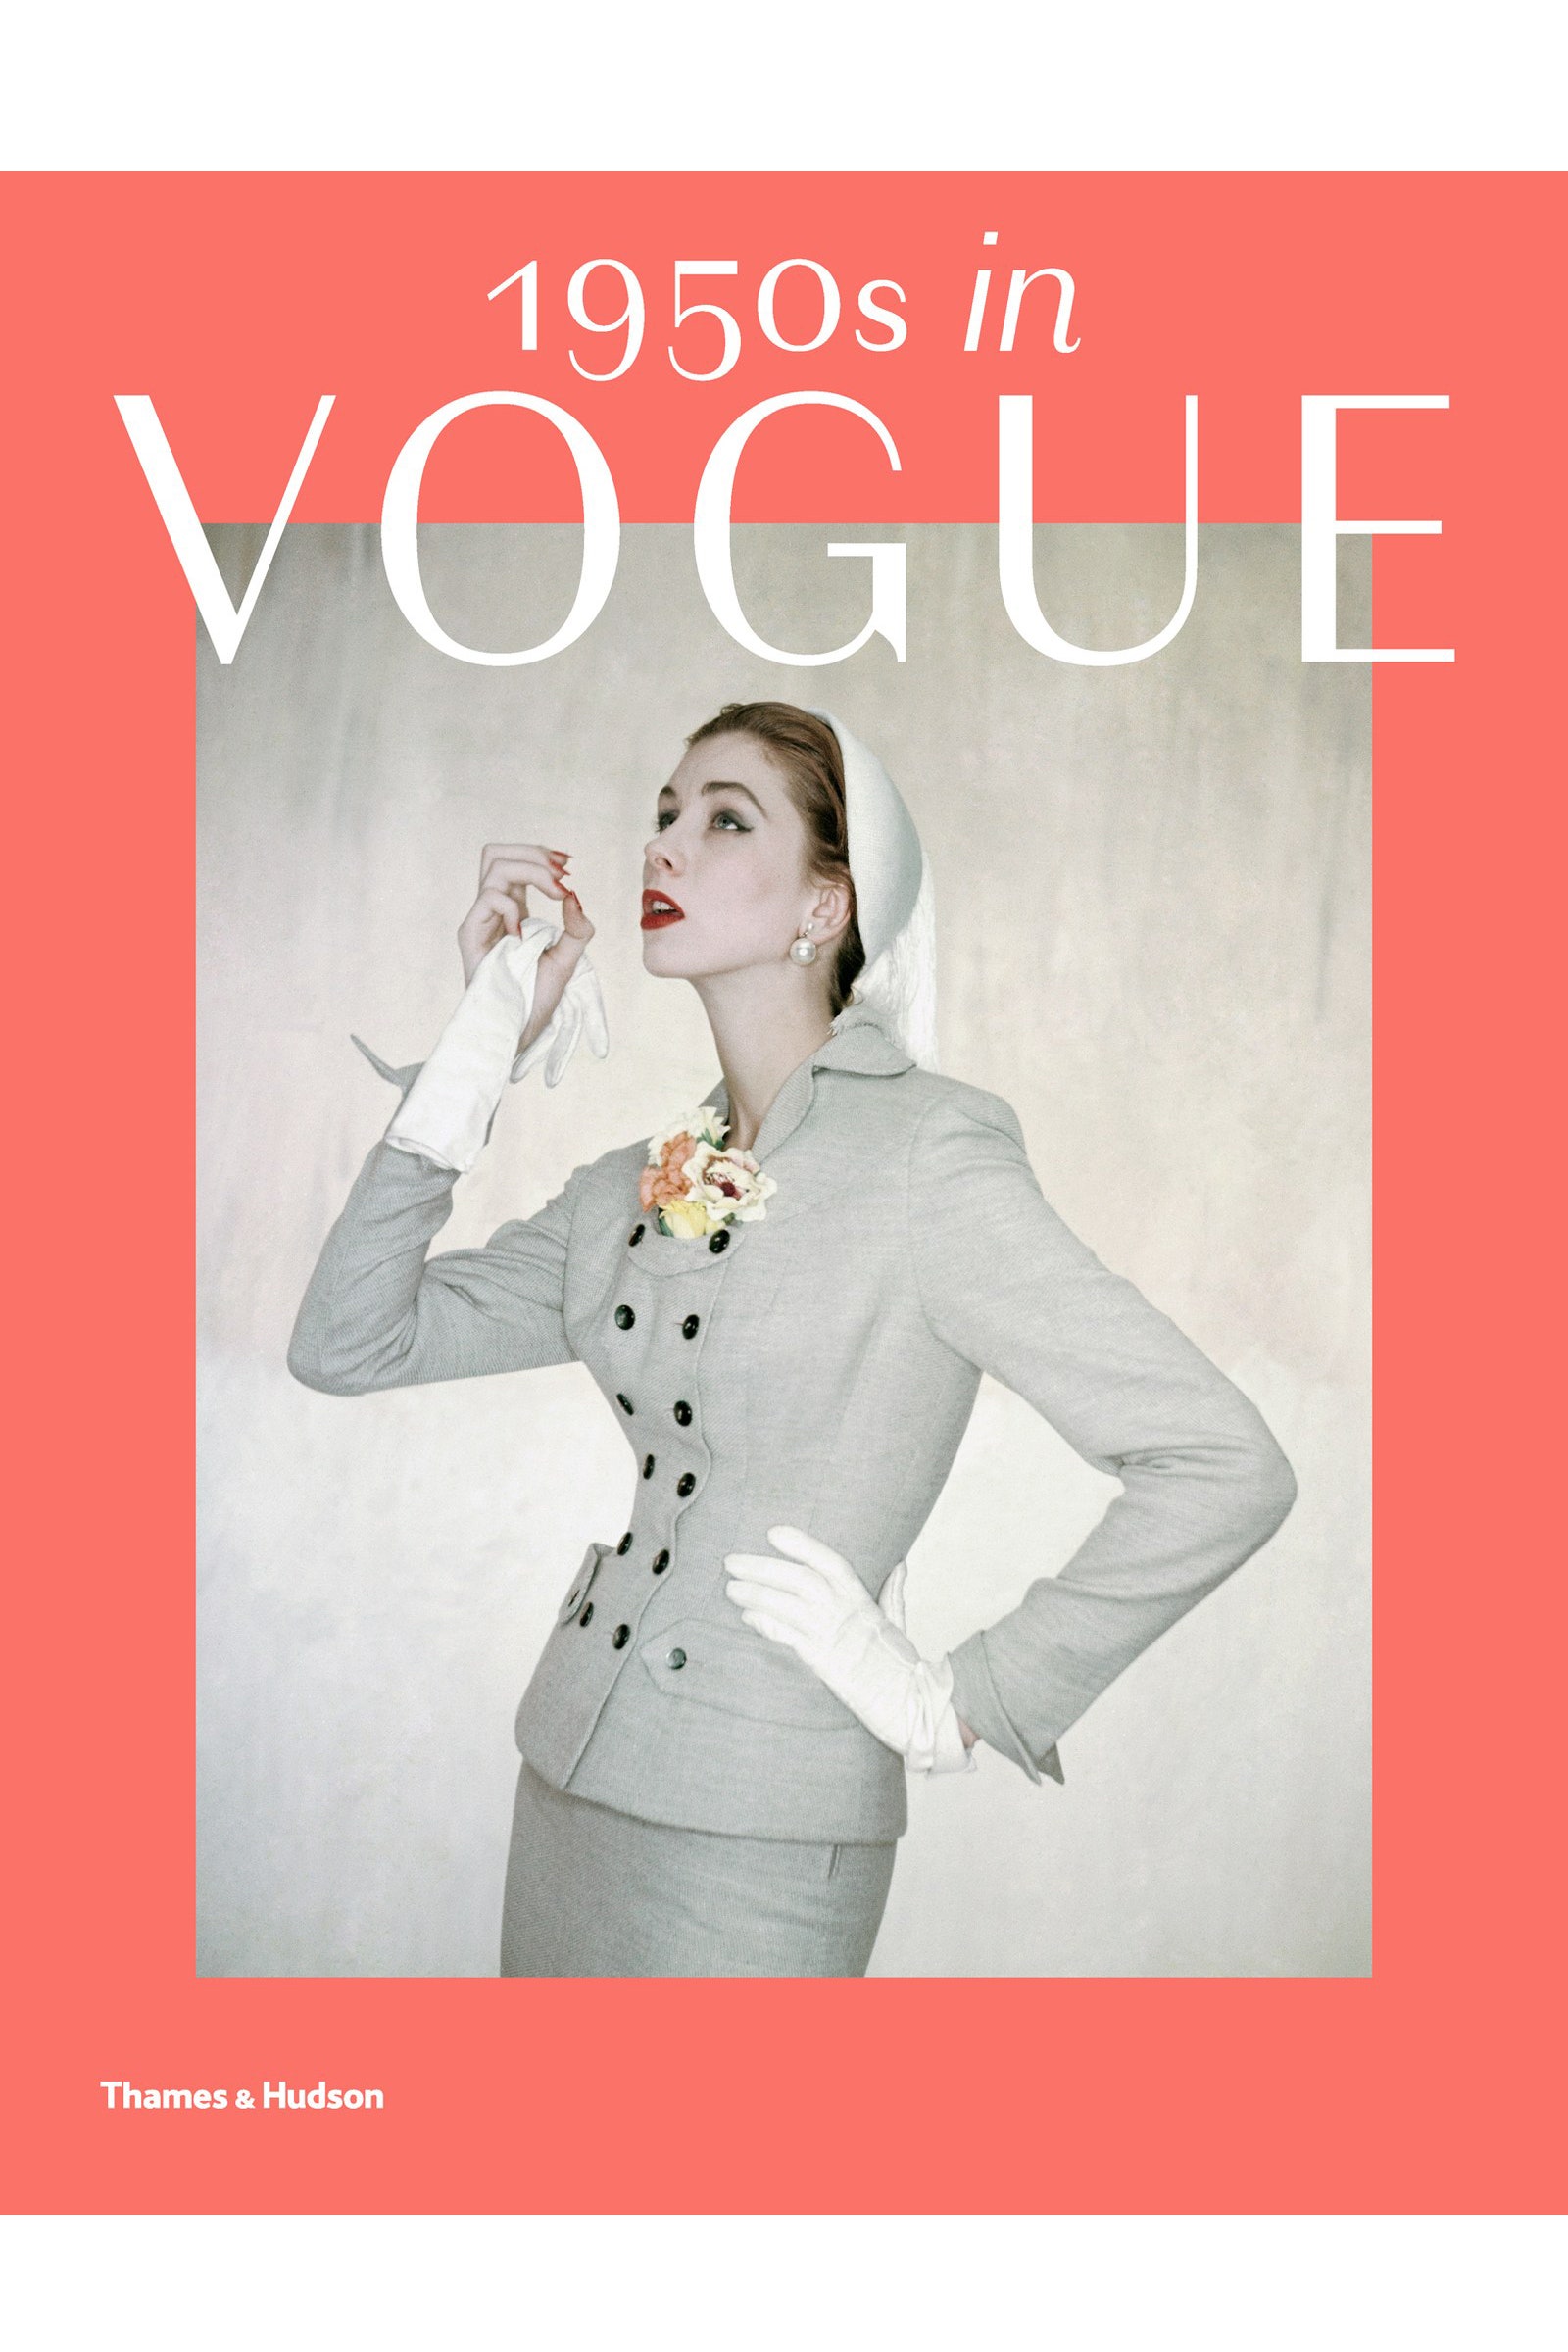 Каким Vogue был в 1950е читайте в новой книге о Джессике Дэйвс